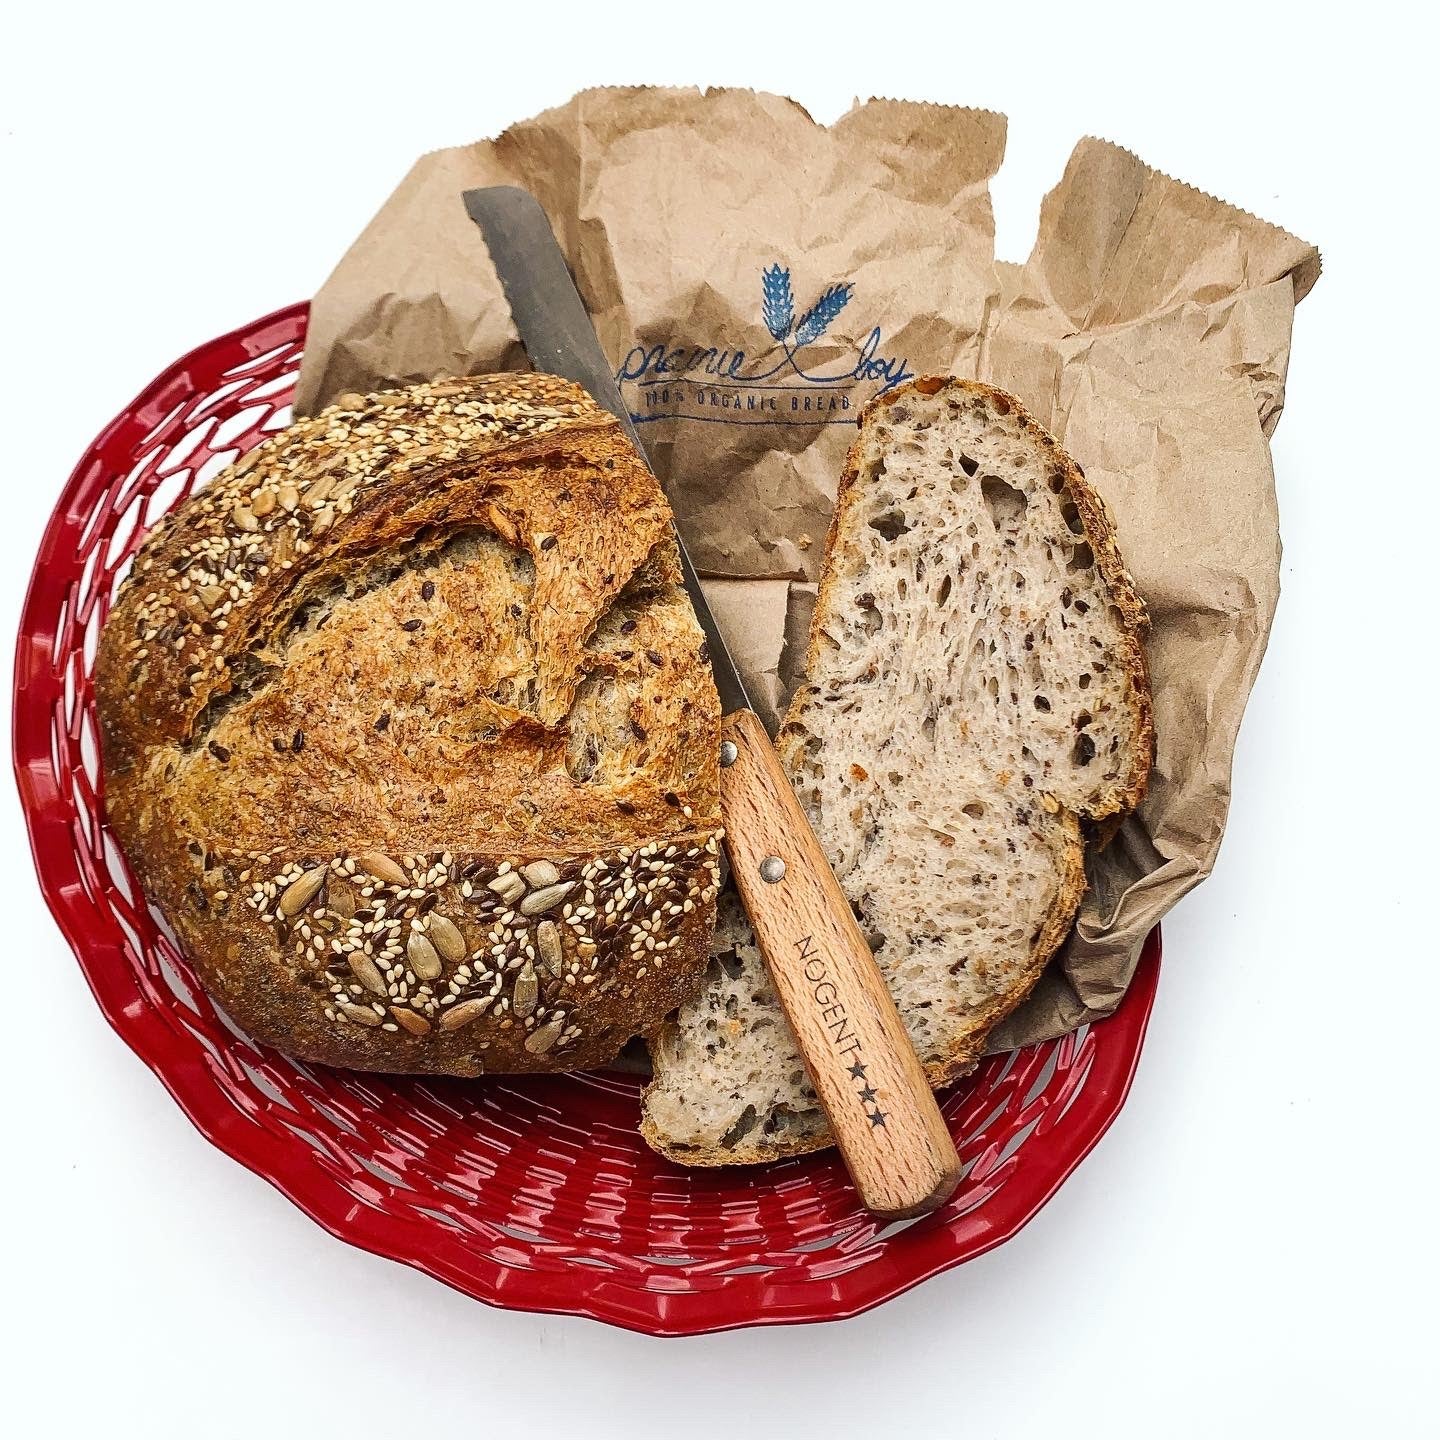 sourdough bread in red metallic bread basket